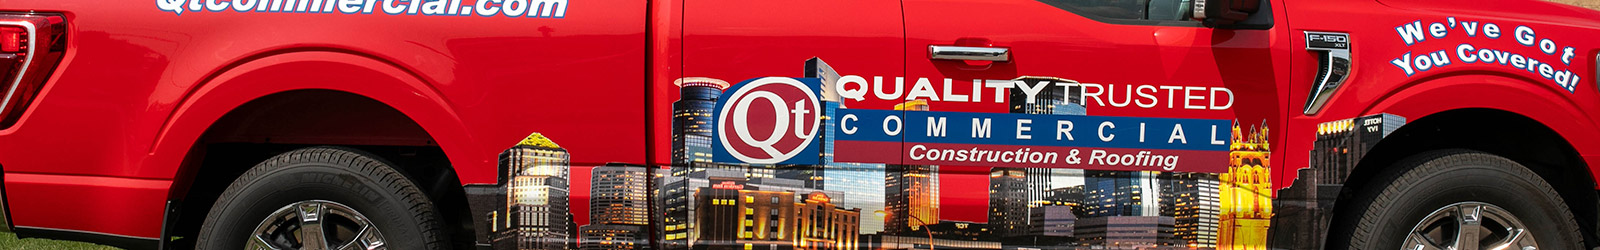 QT Commercial Reviews Banner Image